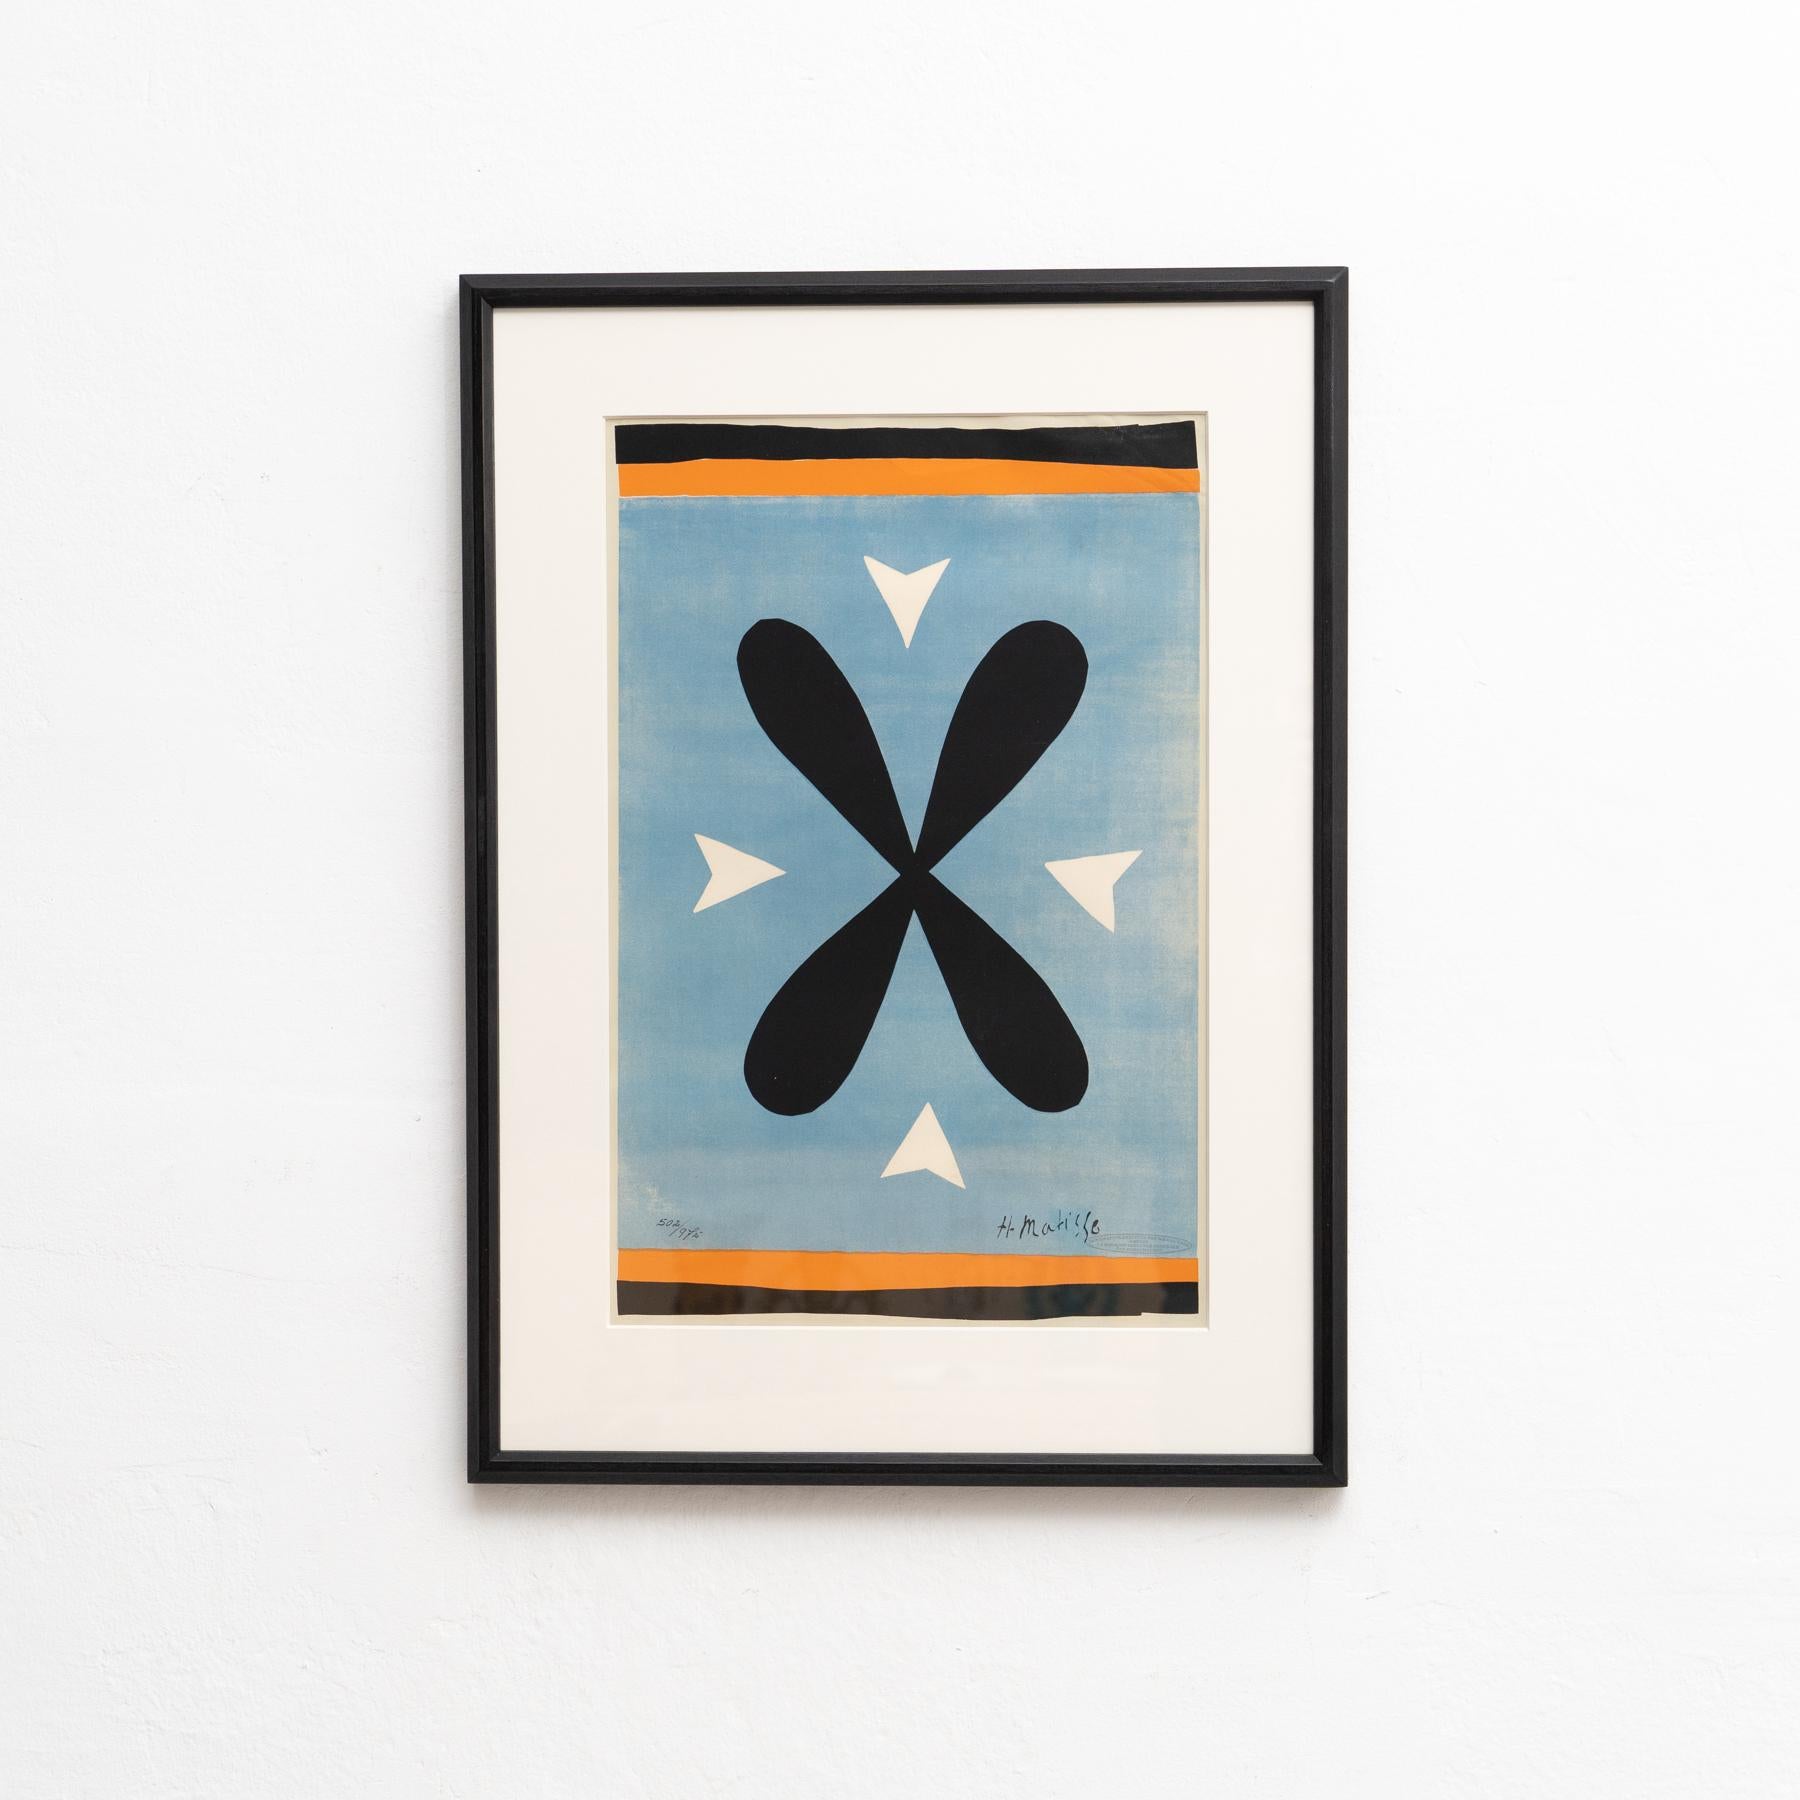 Rehaussez votre collection d'art avec cette exquise lithographie encadrée, représentant l'œuvre emblématique d'Henry Matisse 